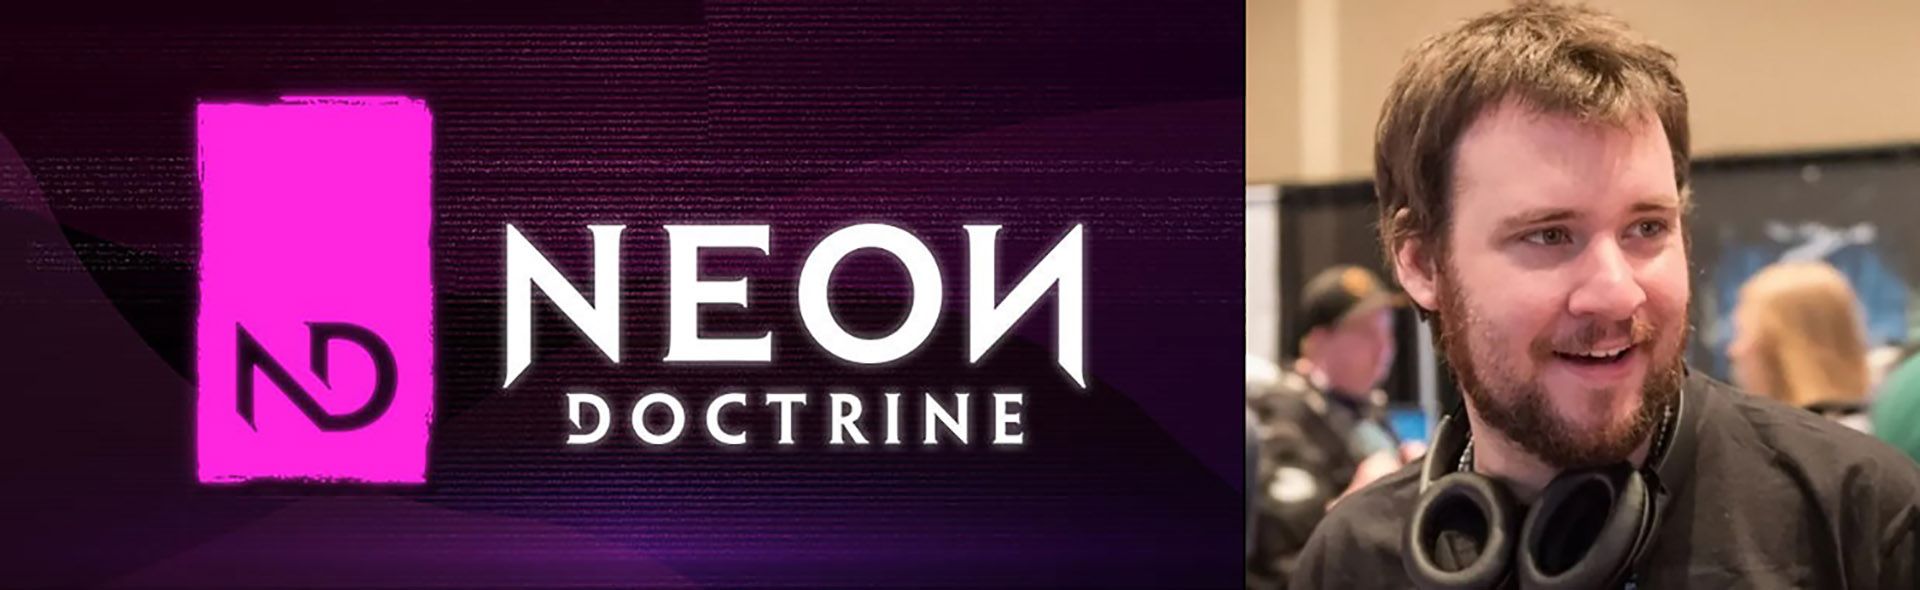 ایان گارنر و لوگوی Neon Doctrine